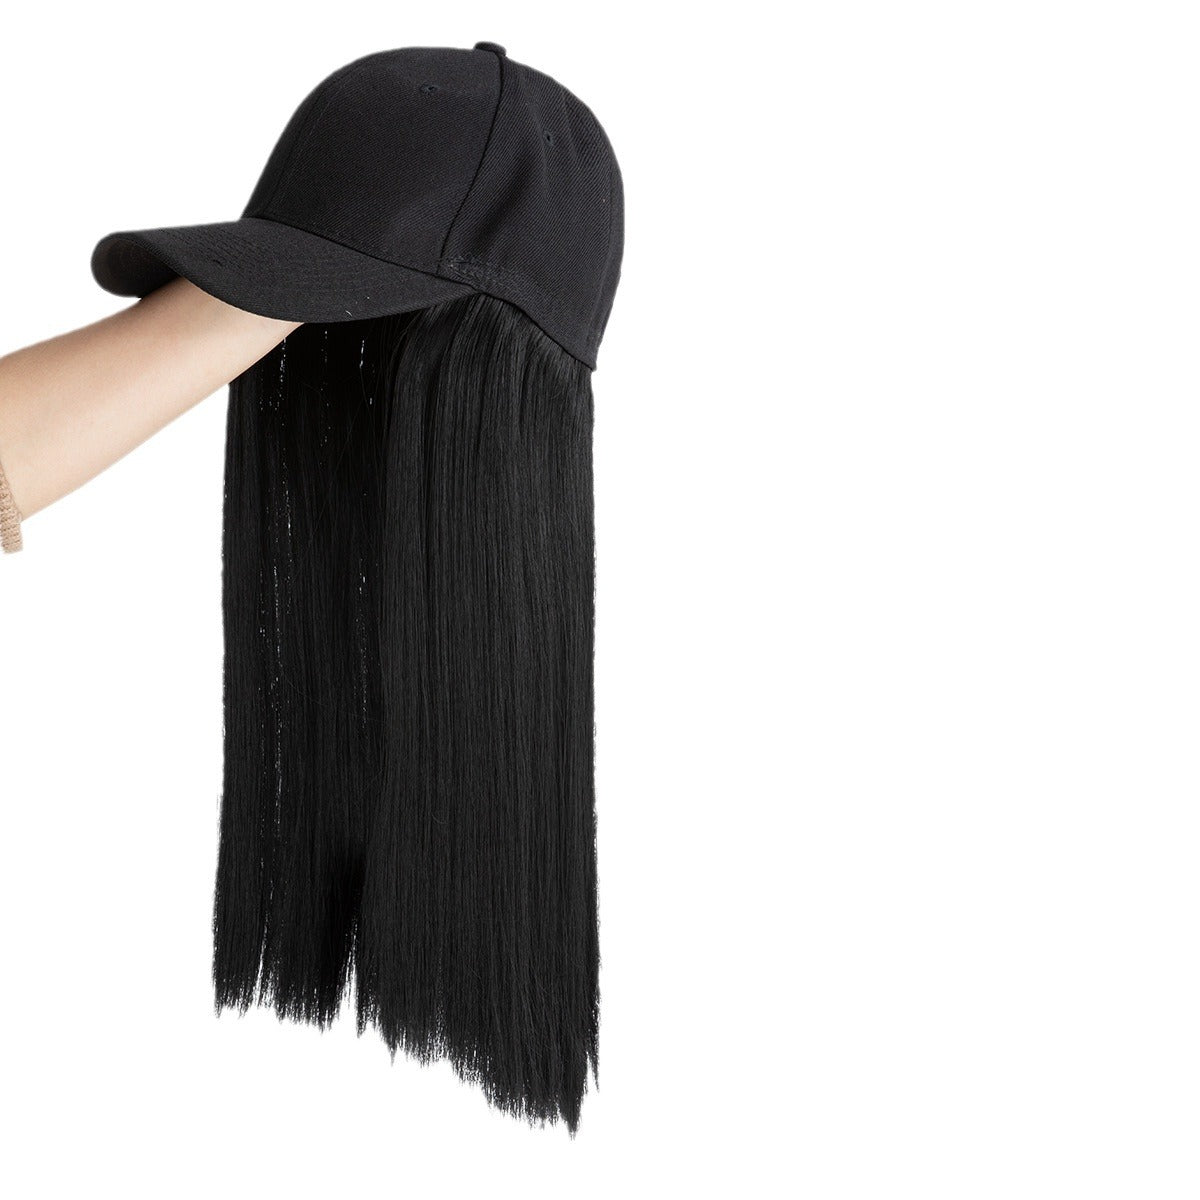 Peruka z długimi, prostymi włosami syntetycznymi, damska, z czapką z daszkiem, zintegrowaną treską na całą głowę, naturalny wygląd – czarna czapka, brązowe włosy